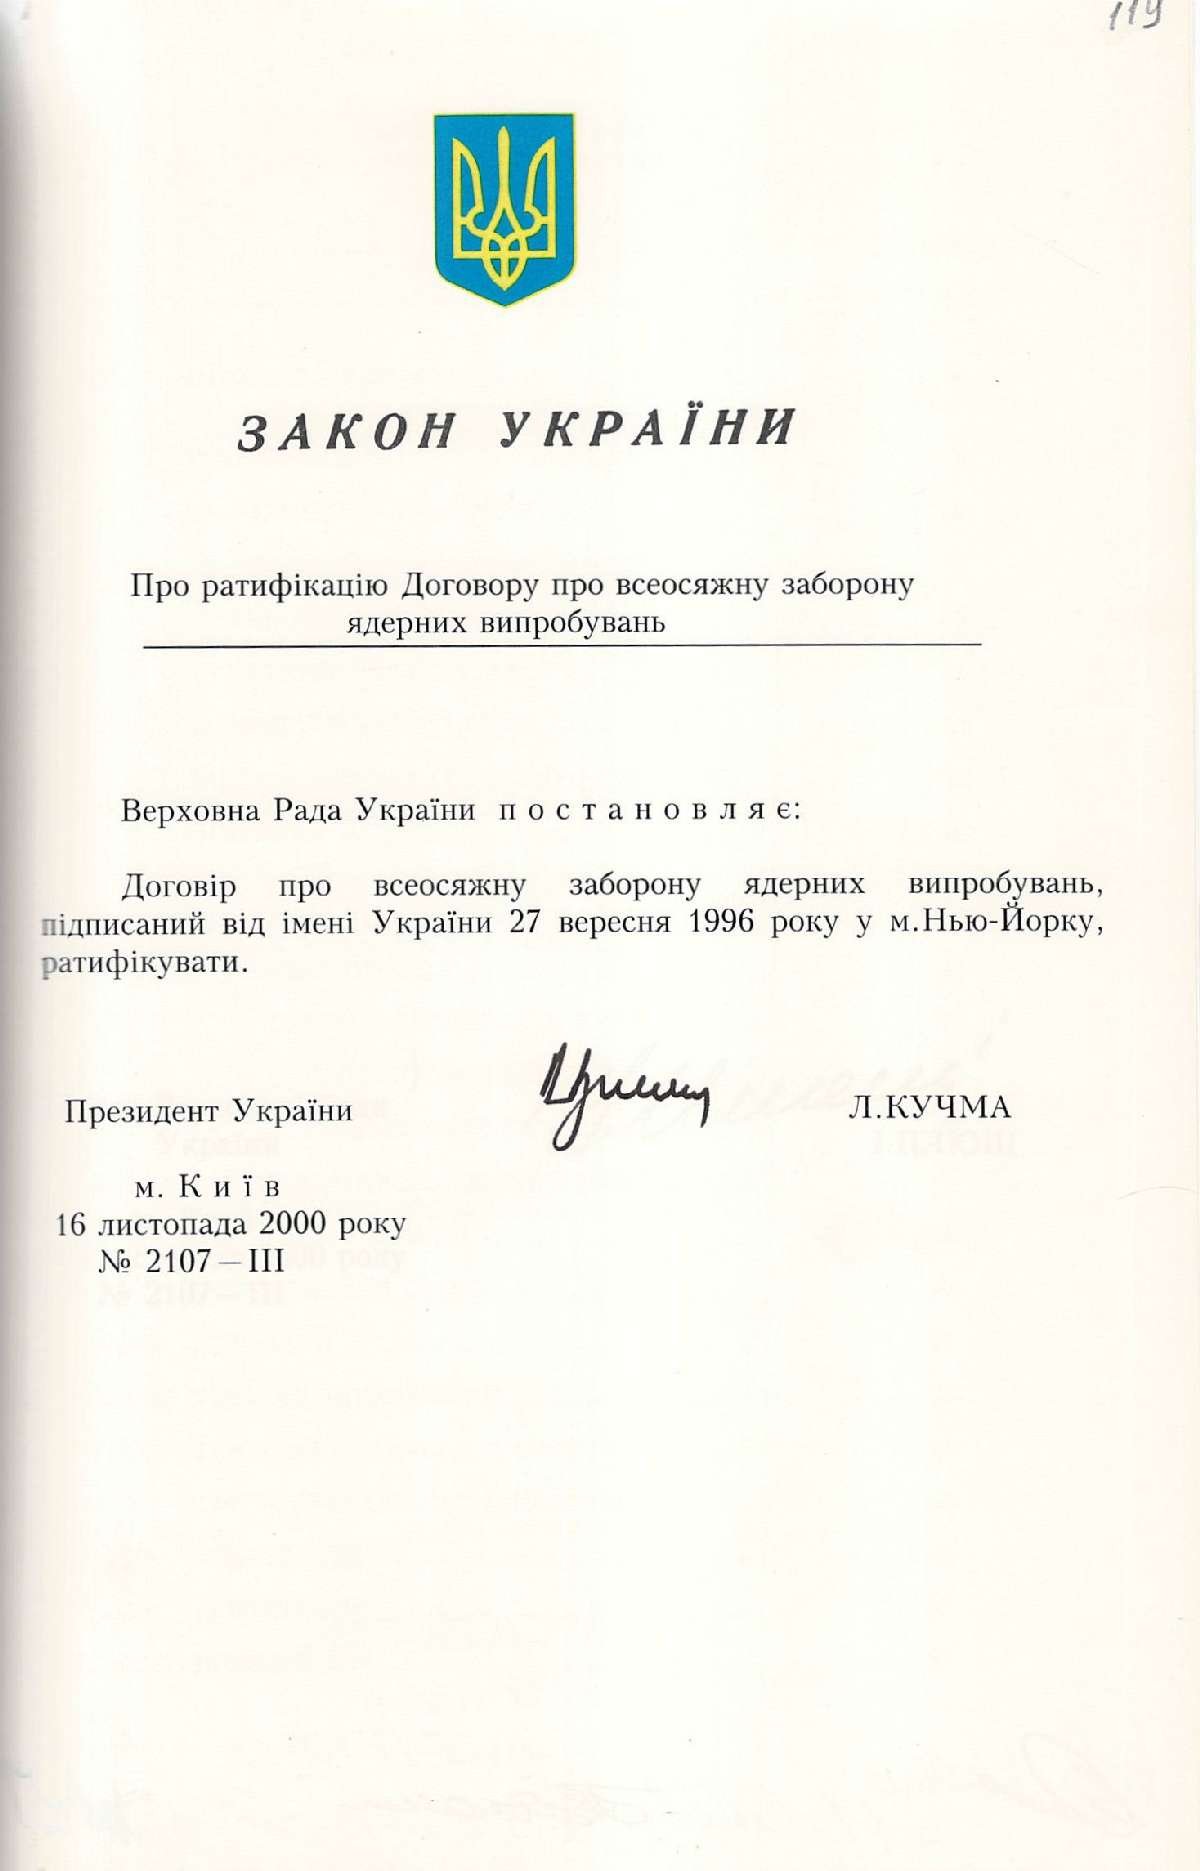 Закон України № 2107-ІІІ «Про ратифікацію Договору про всеосяжну заборону ядерних випробувань». 16 листопада 2000 р.